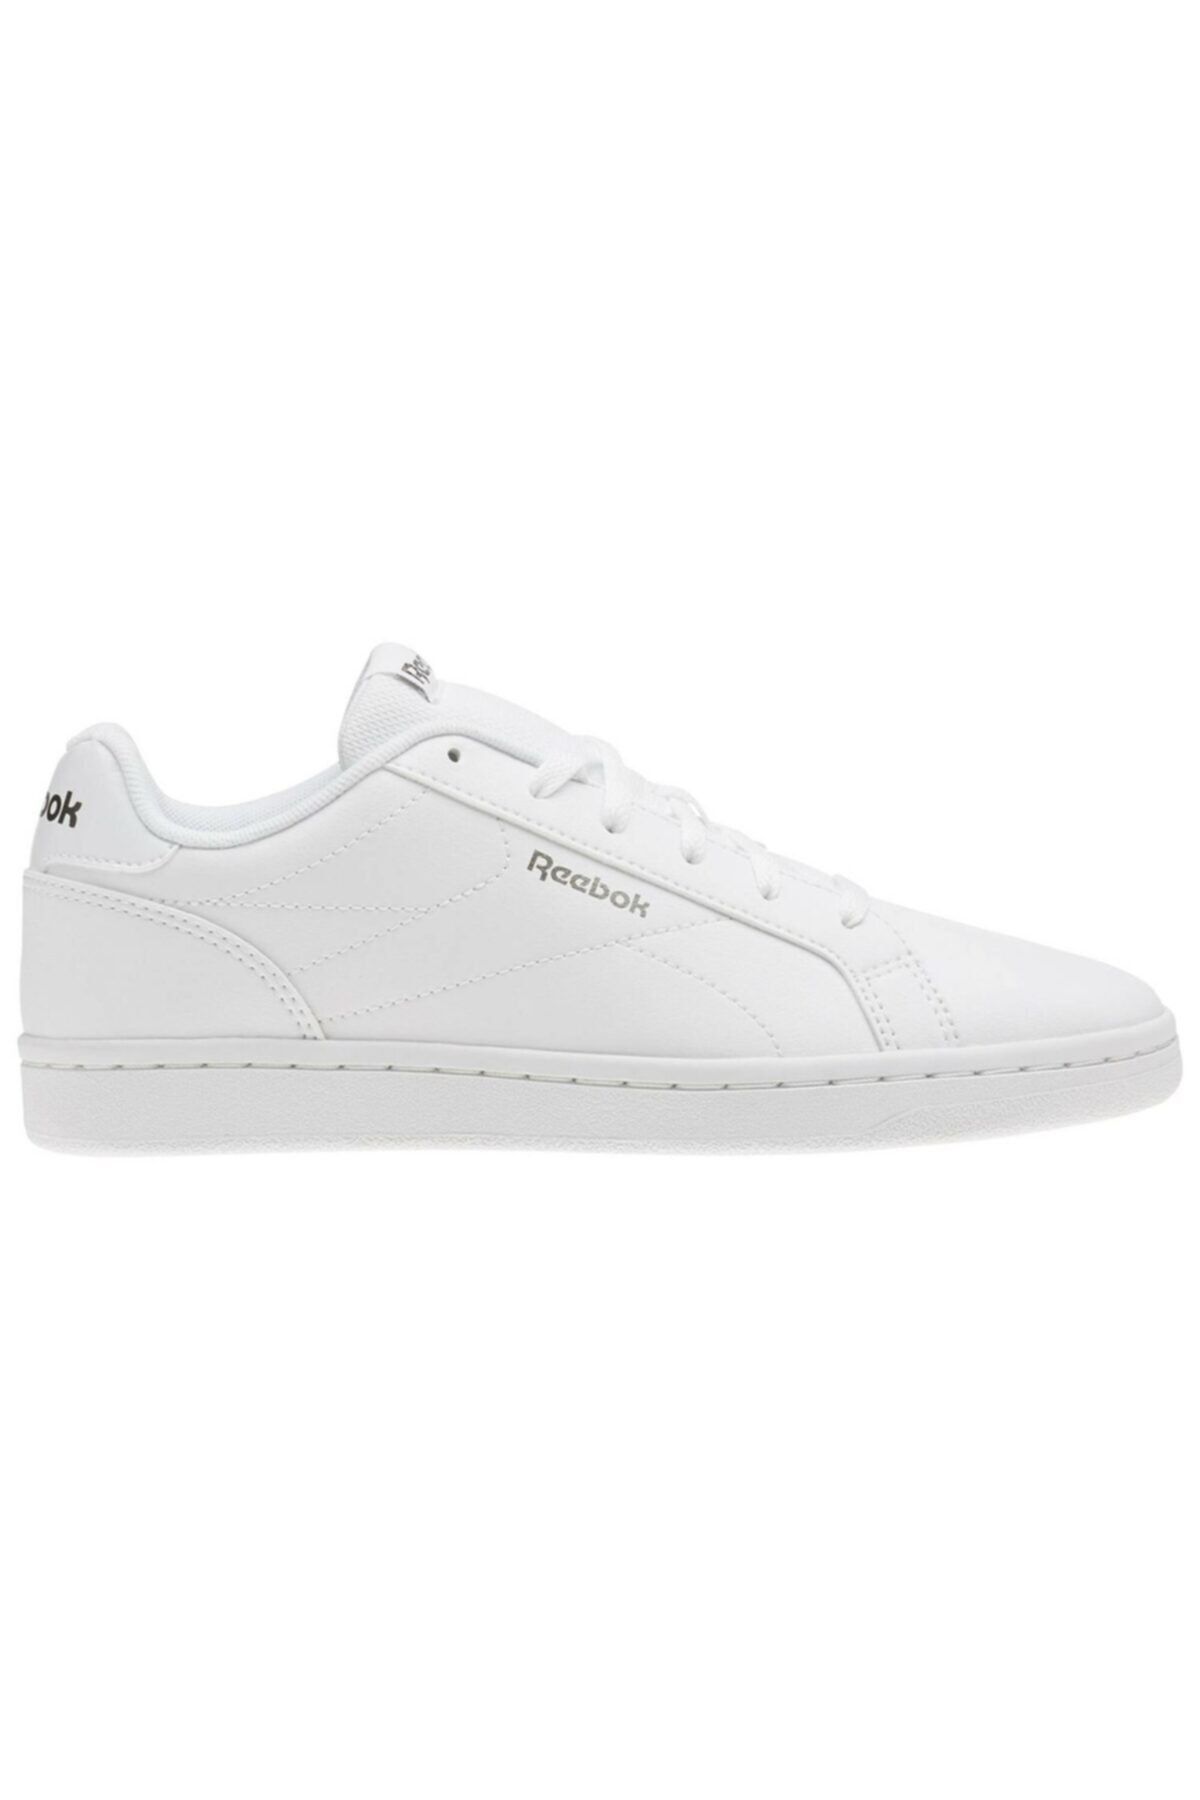 Reebok ROYAL COMPLETE CLN Beyaz Kadın Sneaker Ayakkabı 100320760